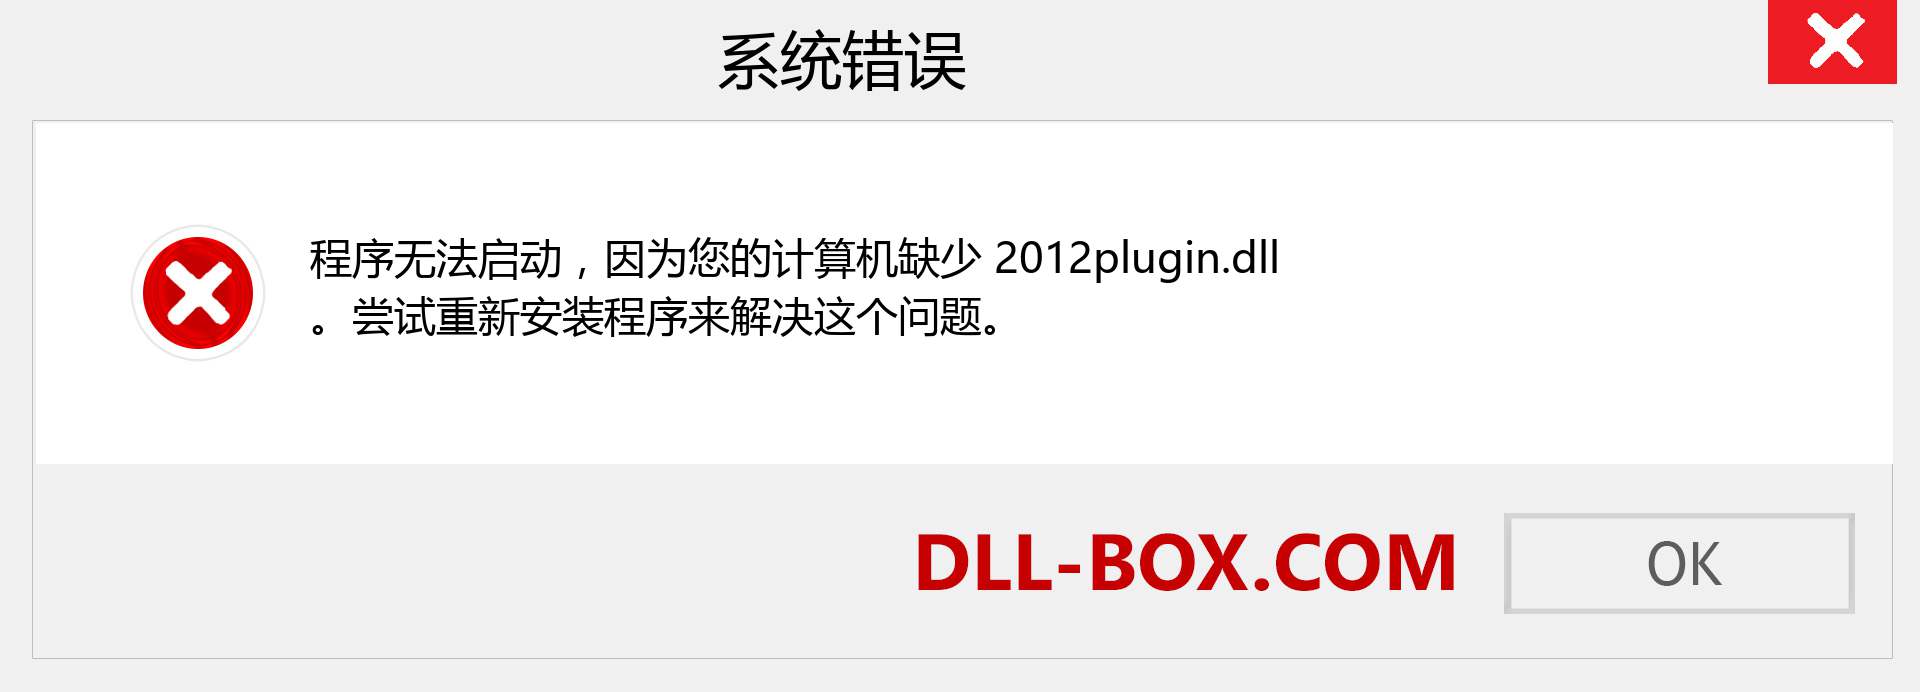 2012plugin.dll 文件丢失？。 适用于 Windows 7、8、10 的下载 - 修复 Windows、照片、图像上的 2012plugin dll 丢失错误